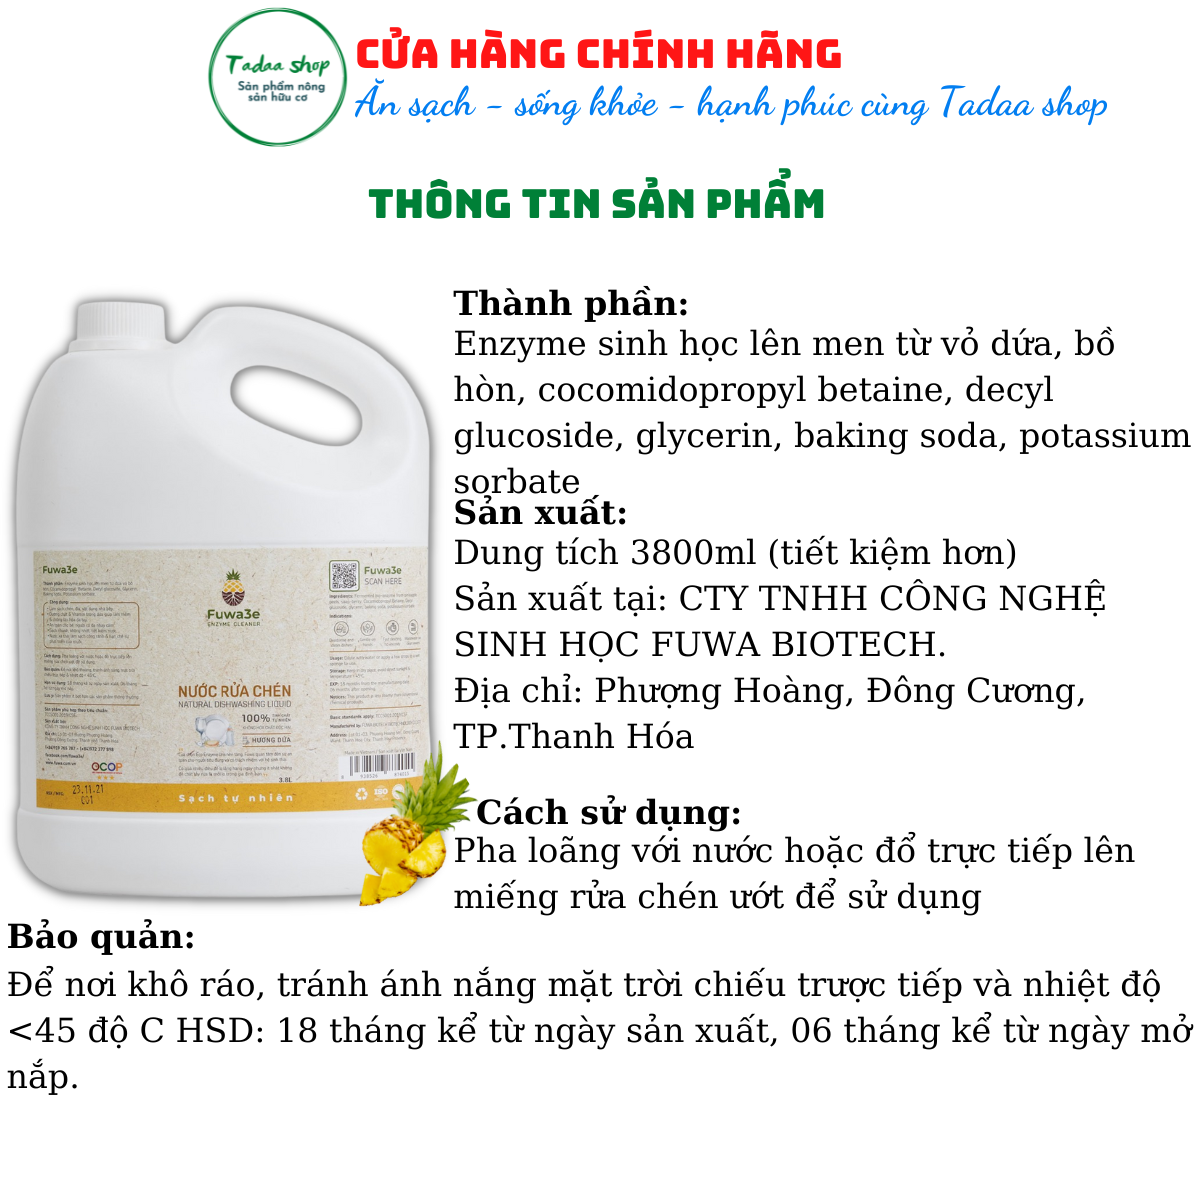 Nước rửa chén hữu cơ hương dứa Fuwa3e an toàn cho da trẻ em can tiết kiệm 3,8L